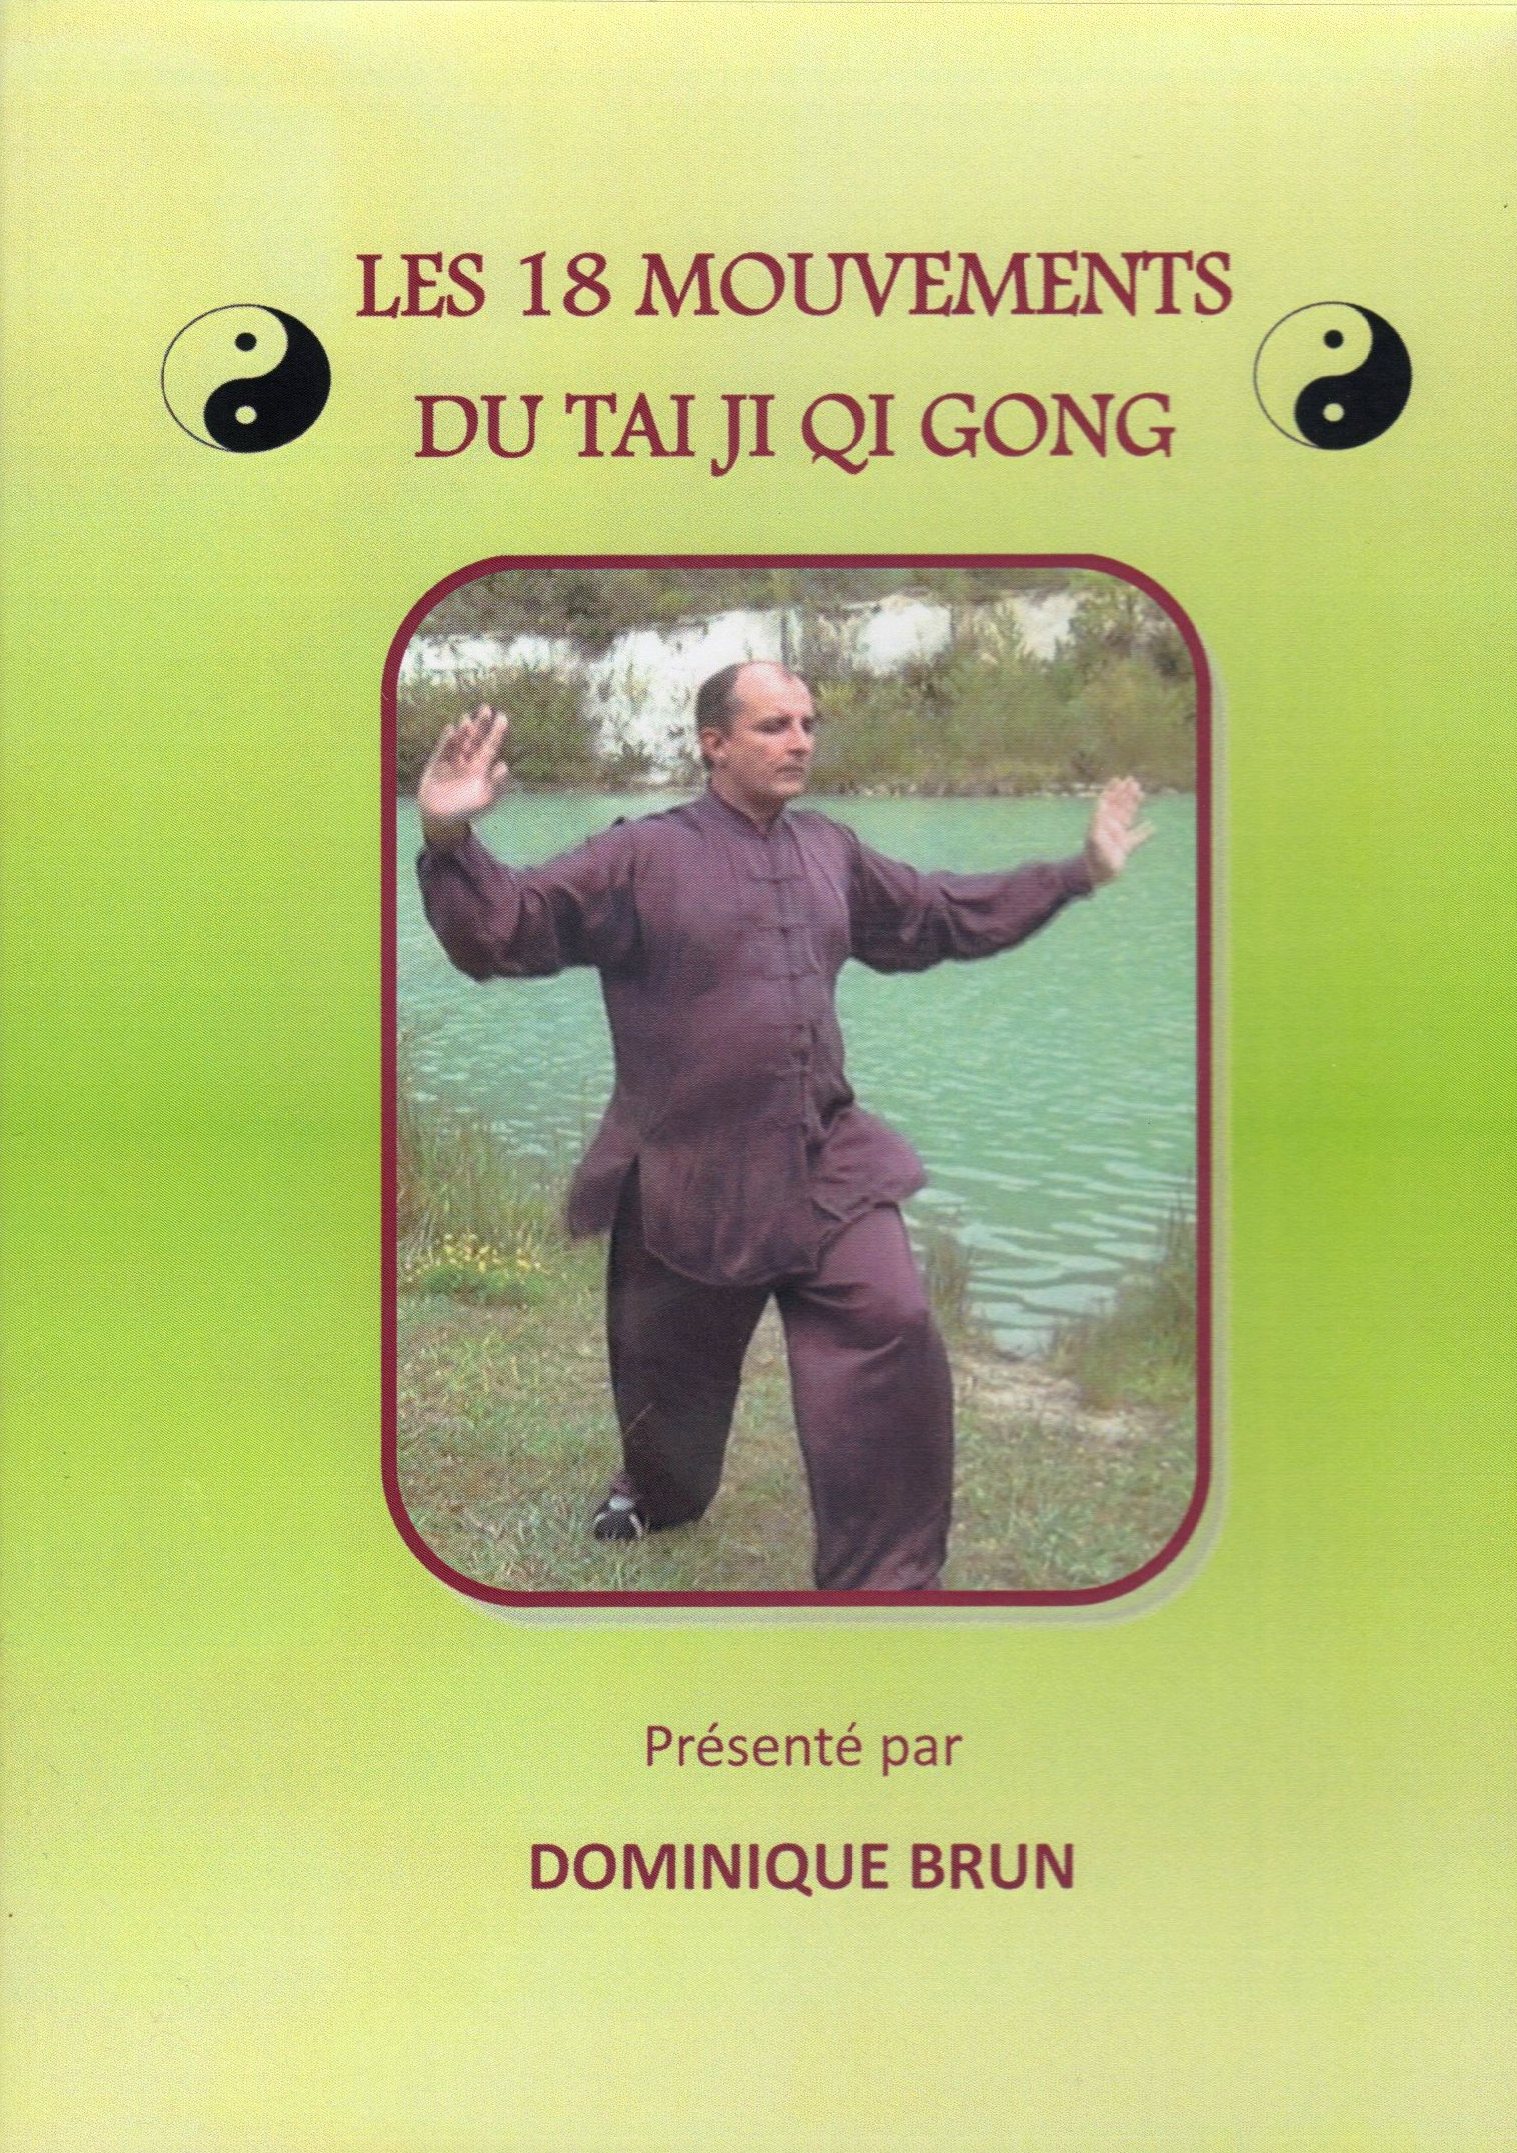 DVD étude du TAIJI QI GONG 'élémentaires' en 8 exercices - La Tortue de Jade